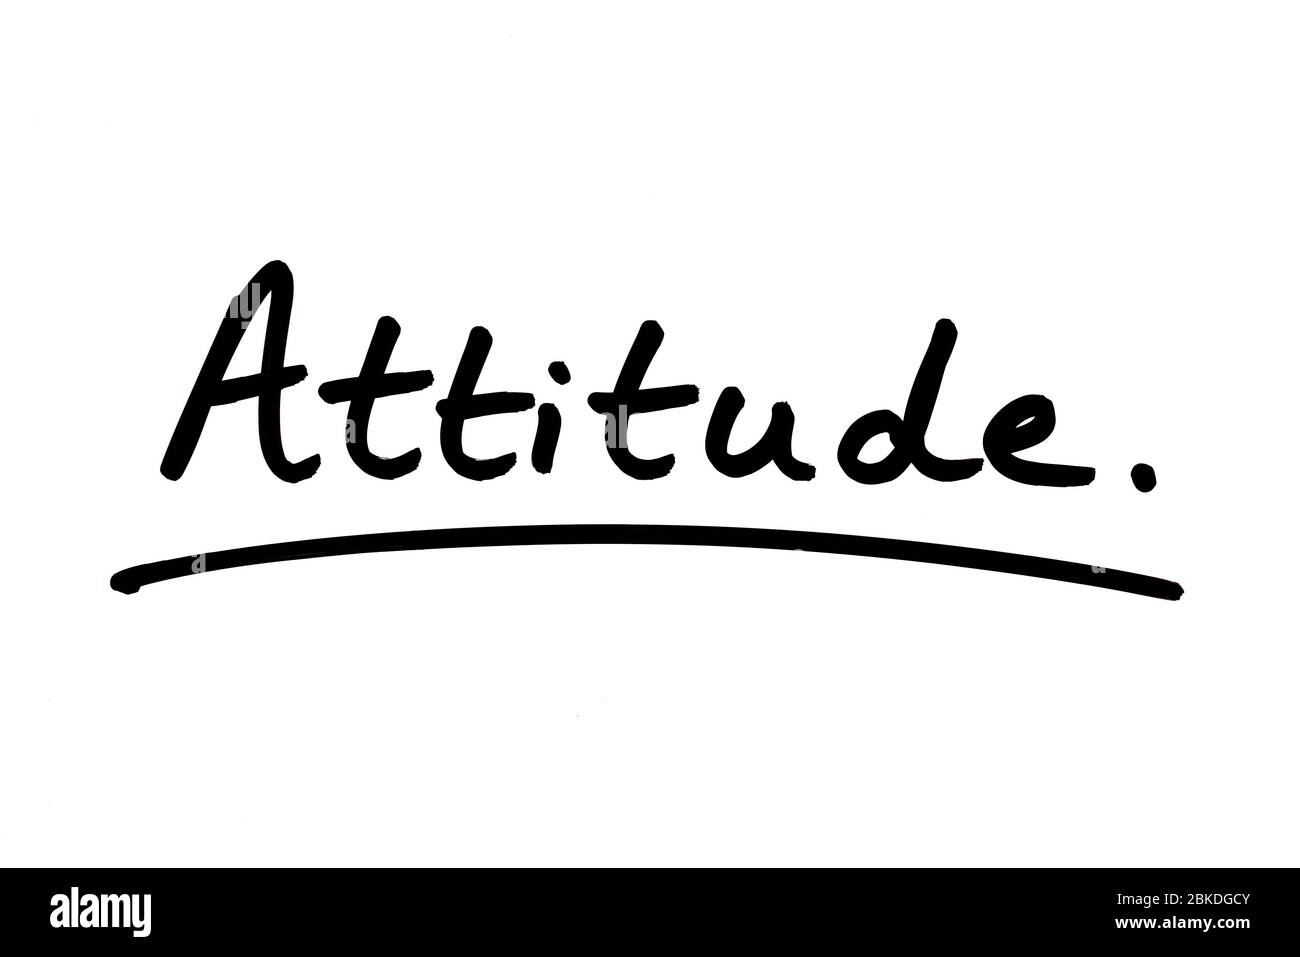 Attitude handwritten on a white background Stock Photo - Alamy